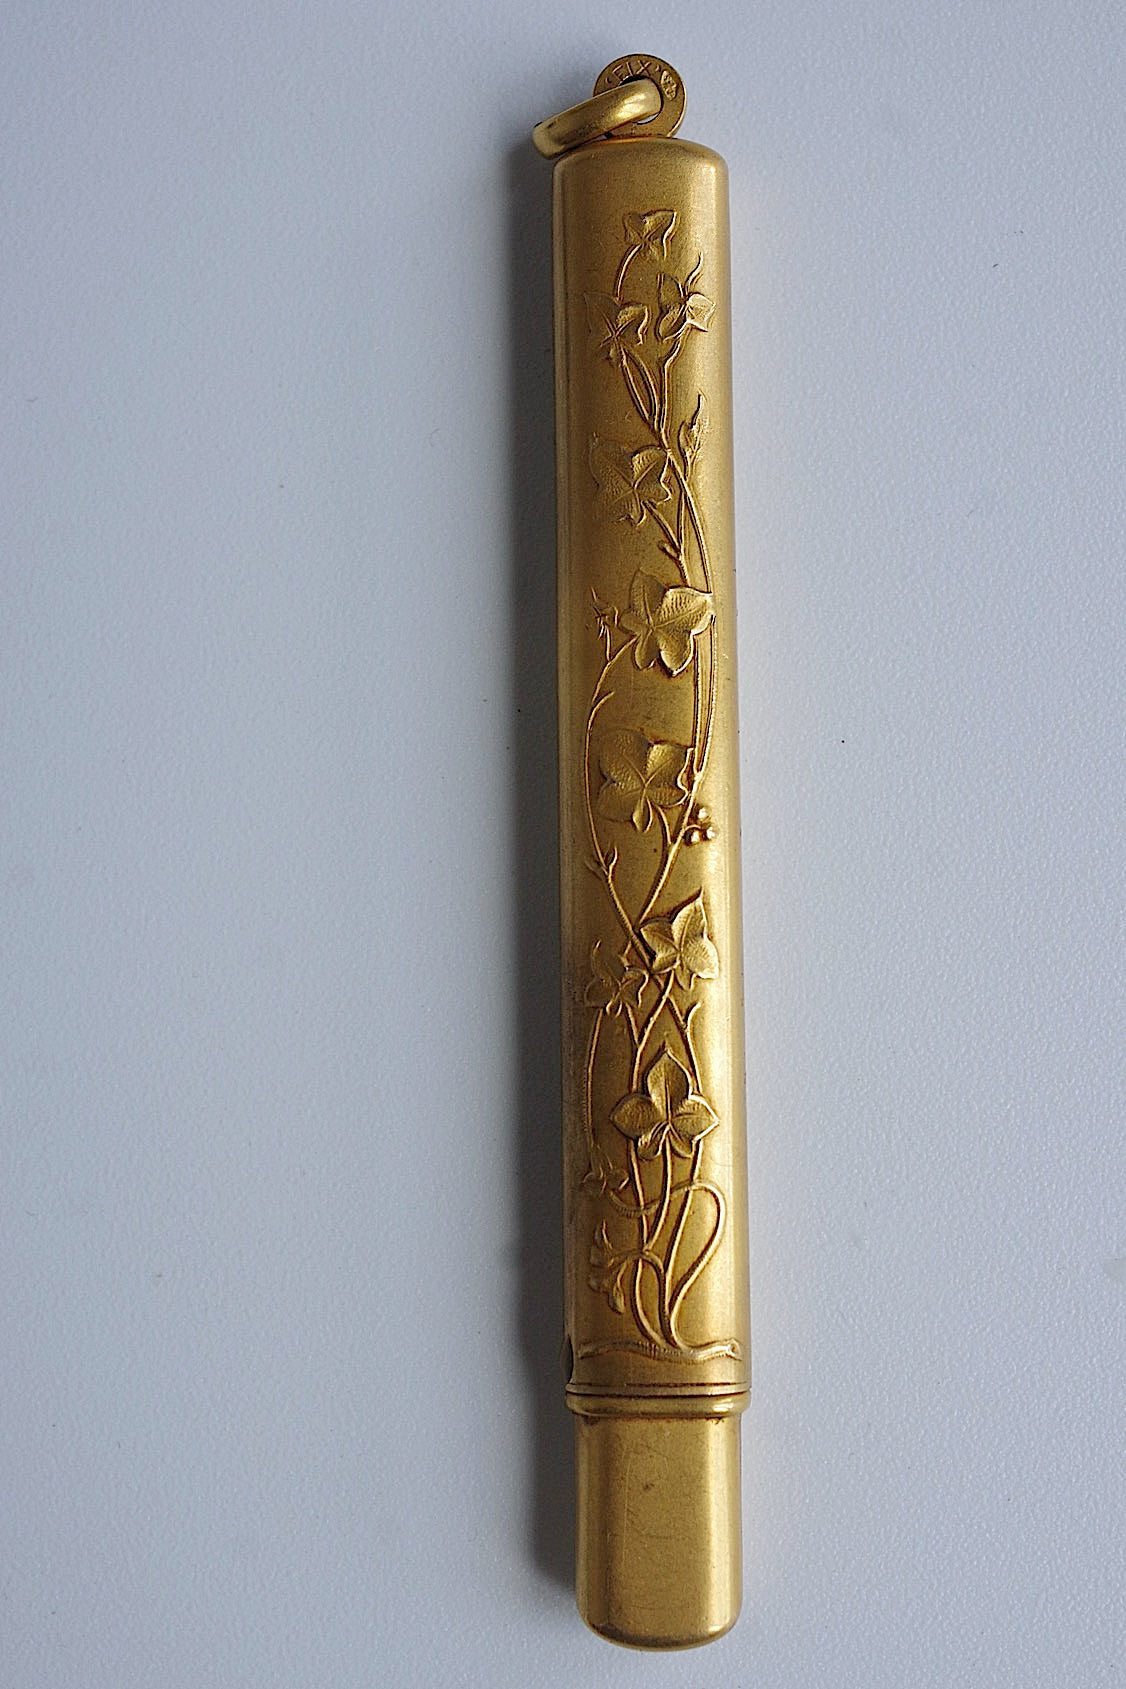 stylo antique アンティークペンケース